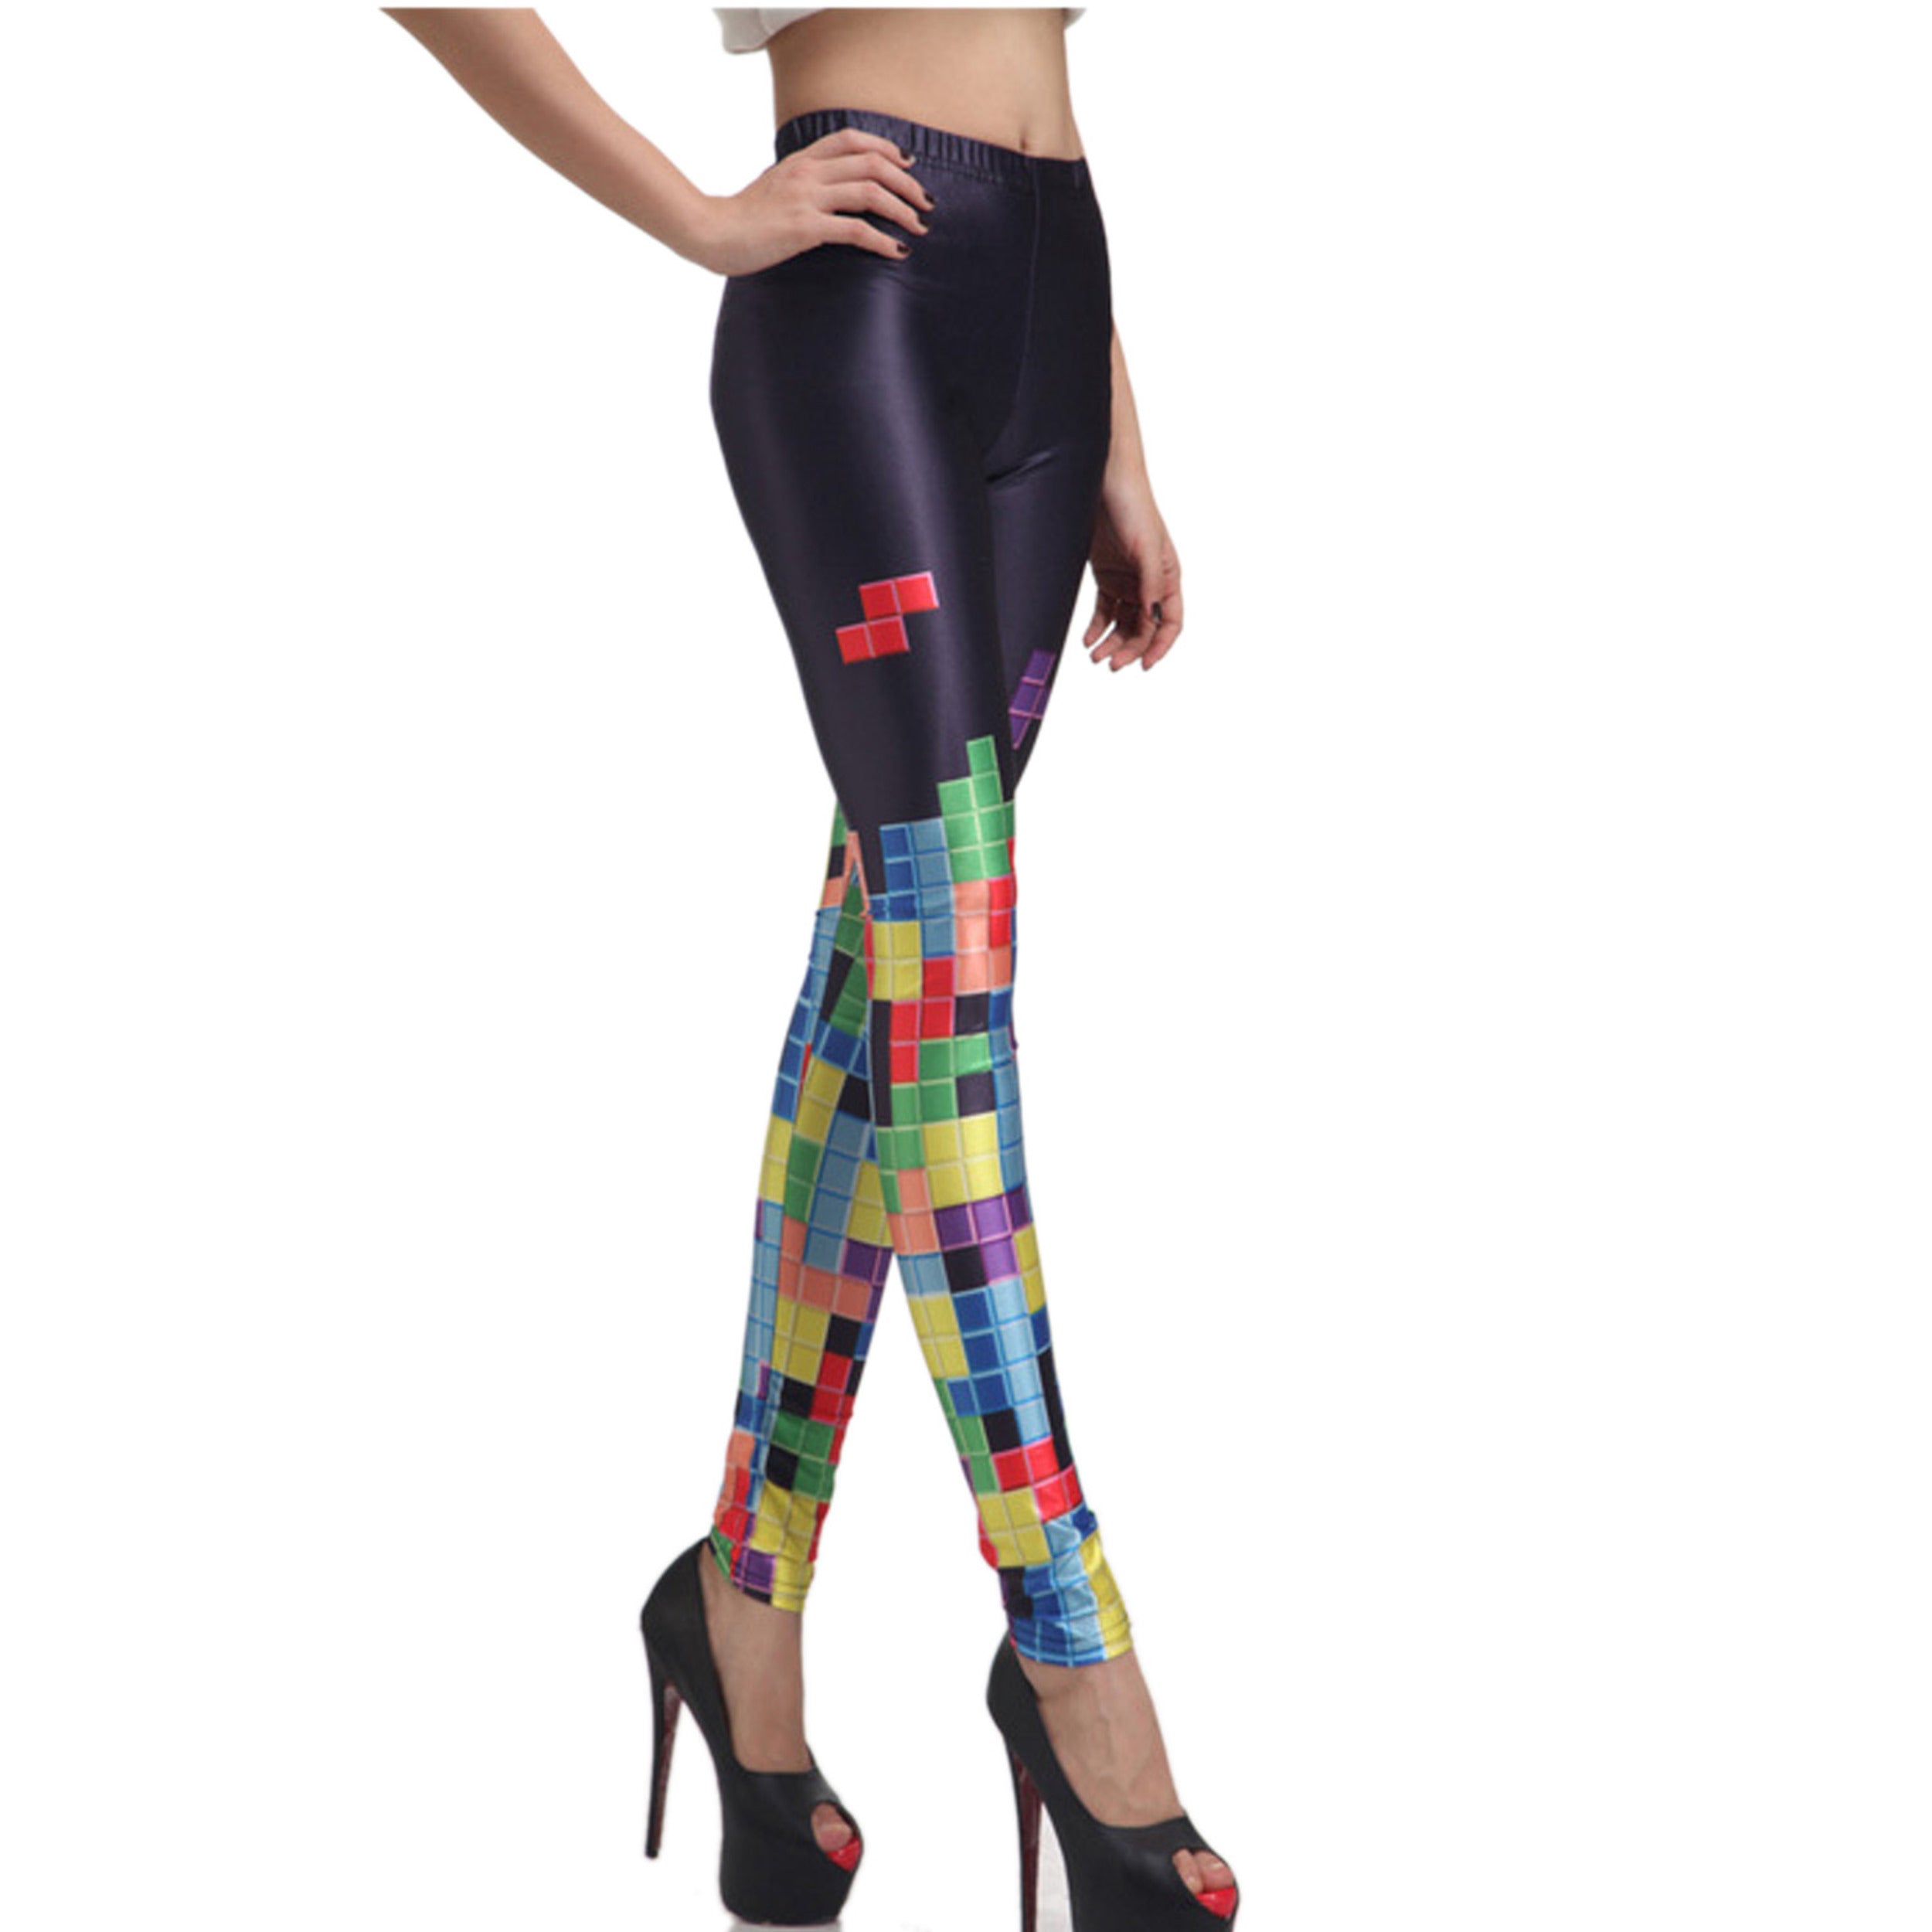 Rubberfashion Leggings Damen Tetris - Sexy Bedruckte Print Leggins Muster Strumpfhose Bunte Glanz Hüft Stretch Hose mit Aufdruck Legging für Frauen